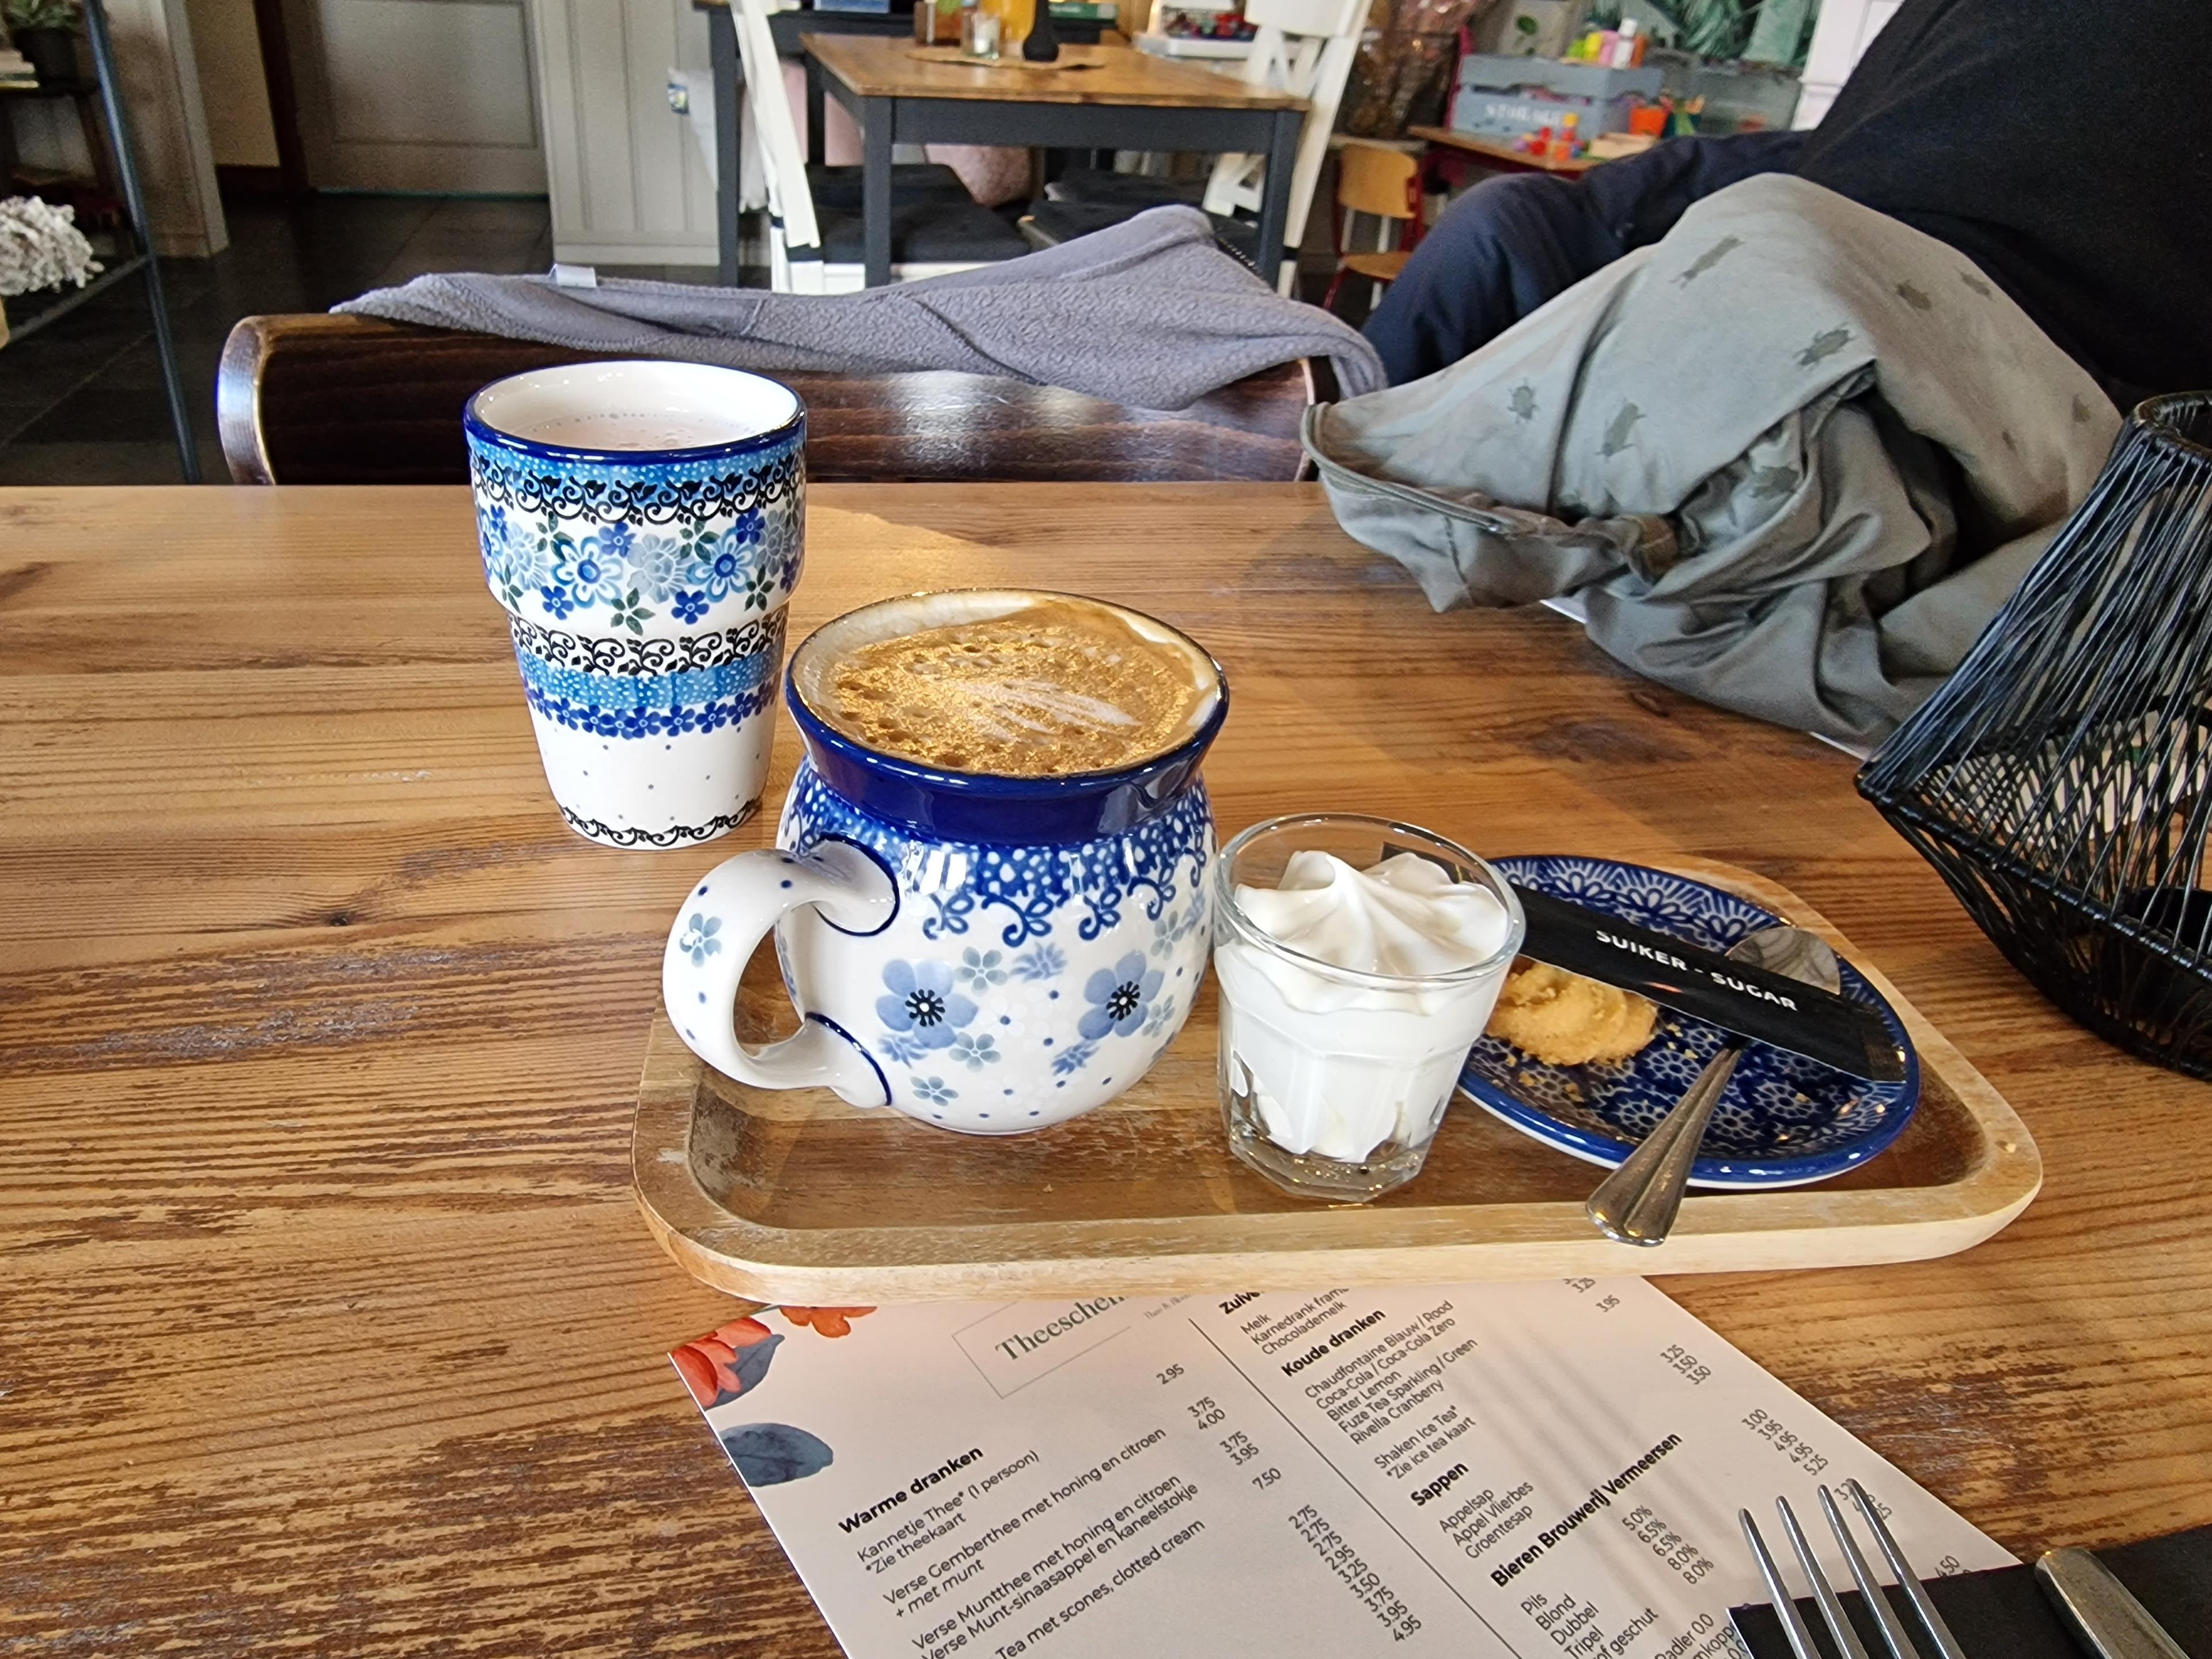 Heerlijke cappuccino met slagroom in oud-Hollands servies